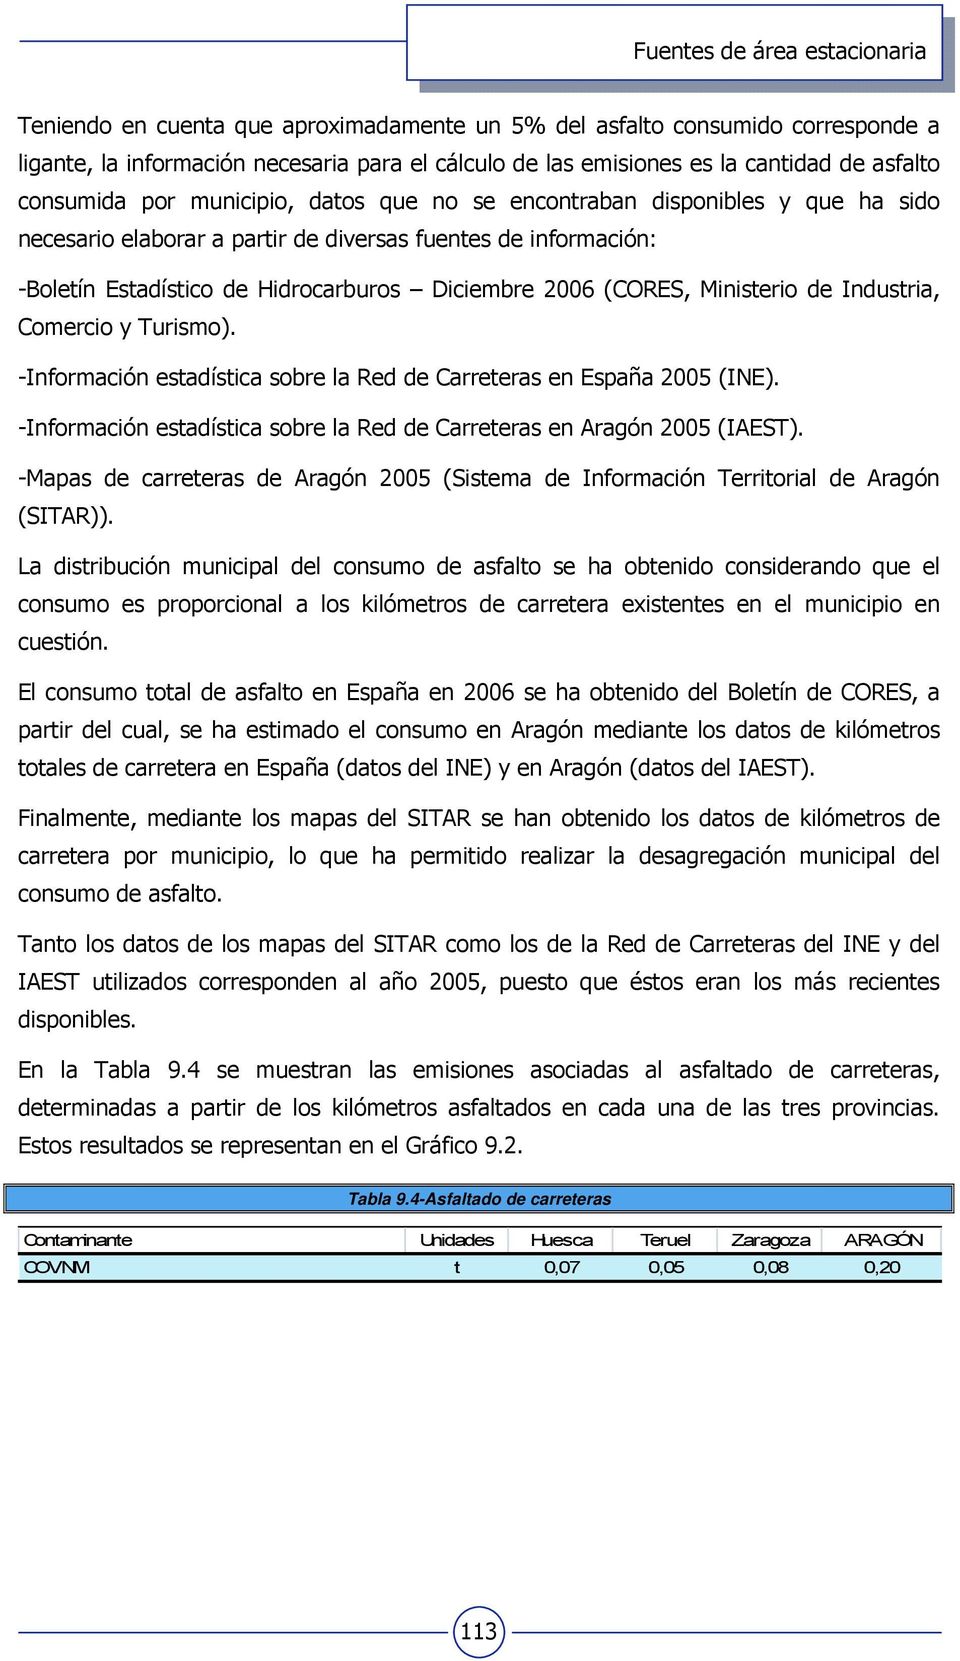 Industria, Comercio y Turismo). -Información estadística sobre la Red de Carreteras en España 2005 (INE). -Información estadística sobre la Red de Carreteras en Aragón 2005 (IAEST).